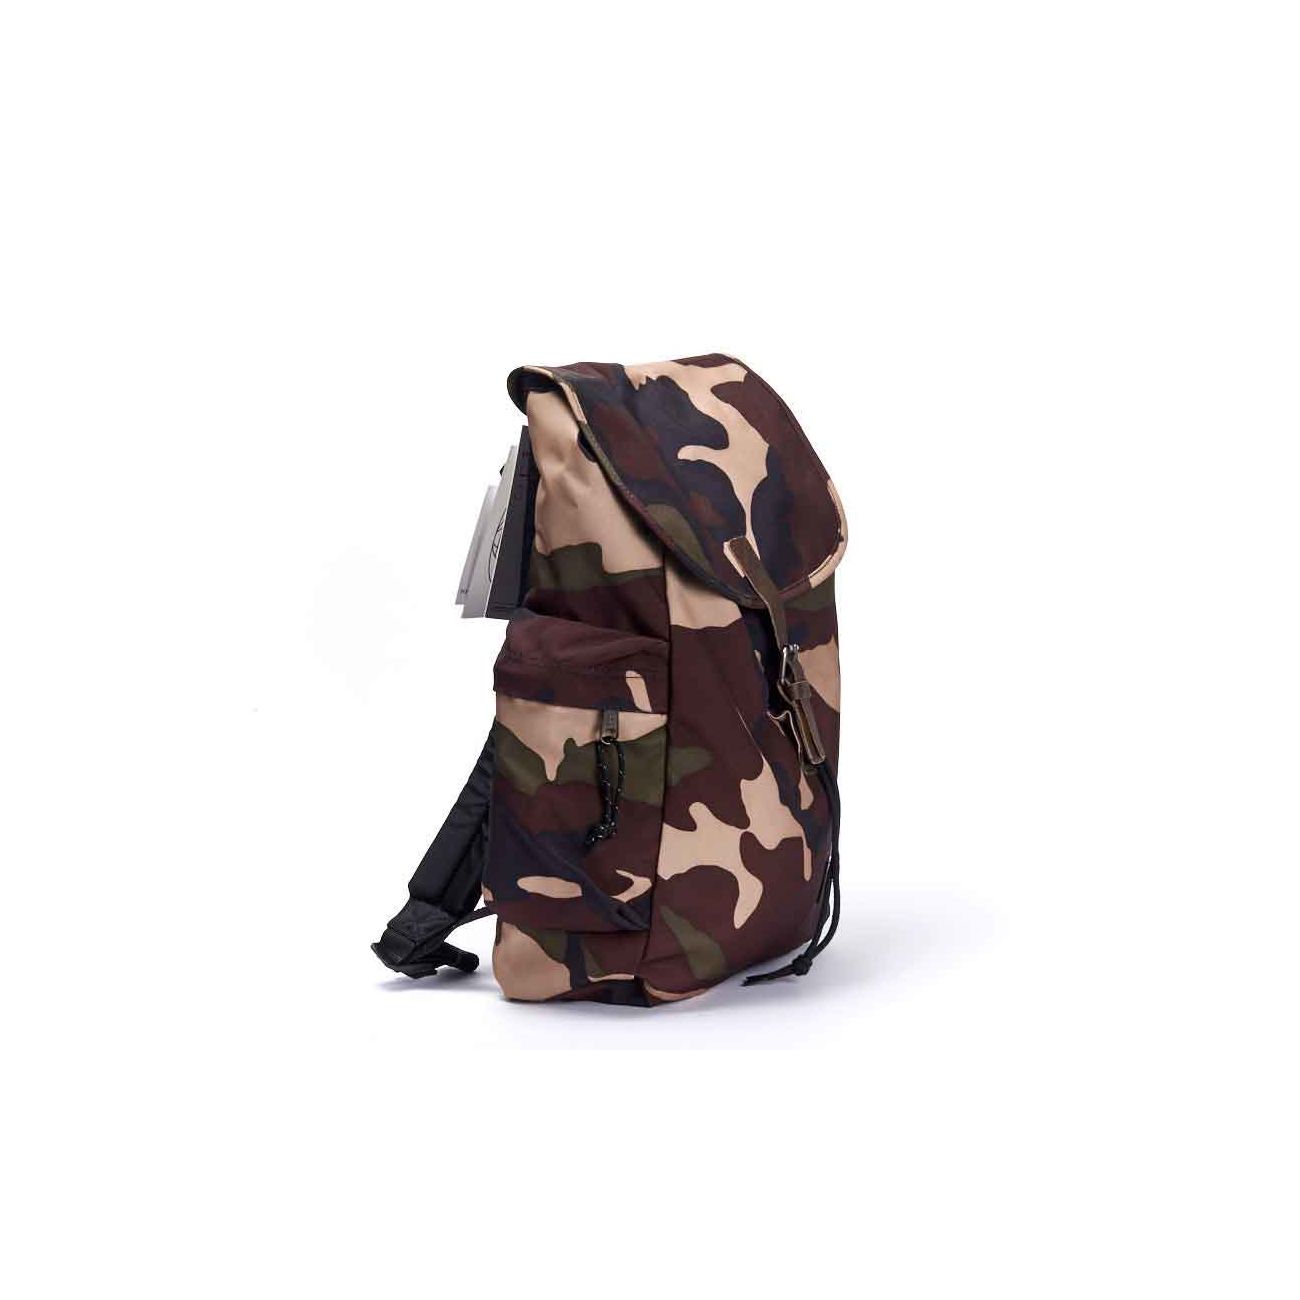 EASTPAK BACKPACK Camouflage | Sportswear